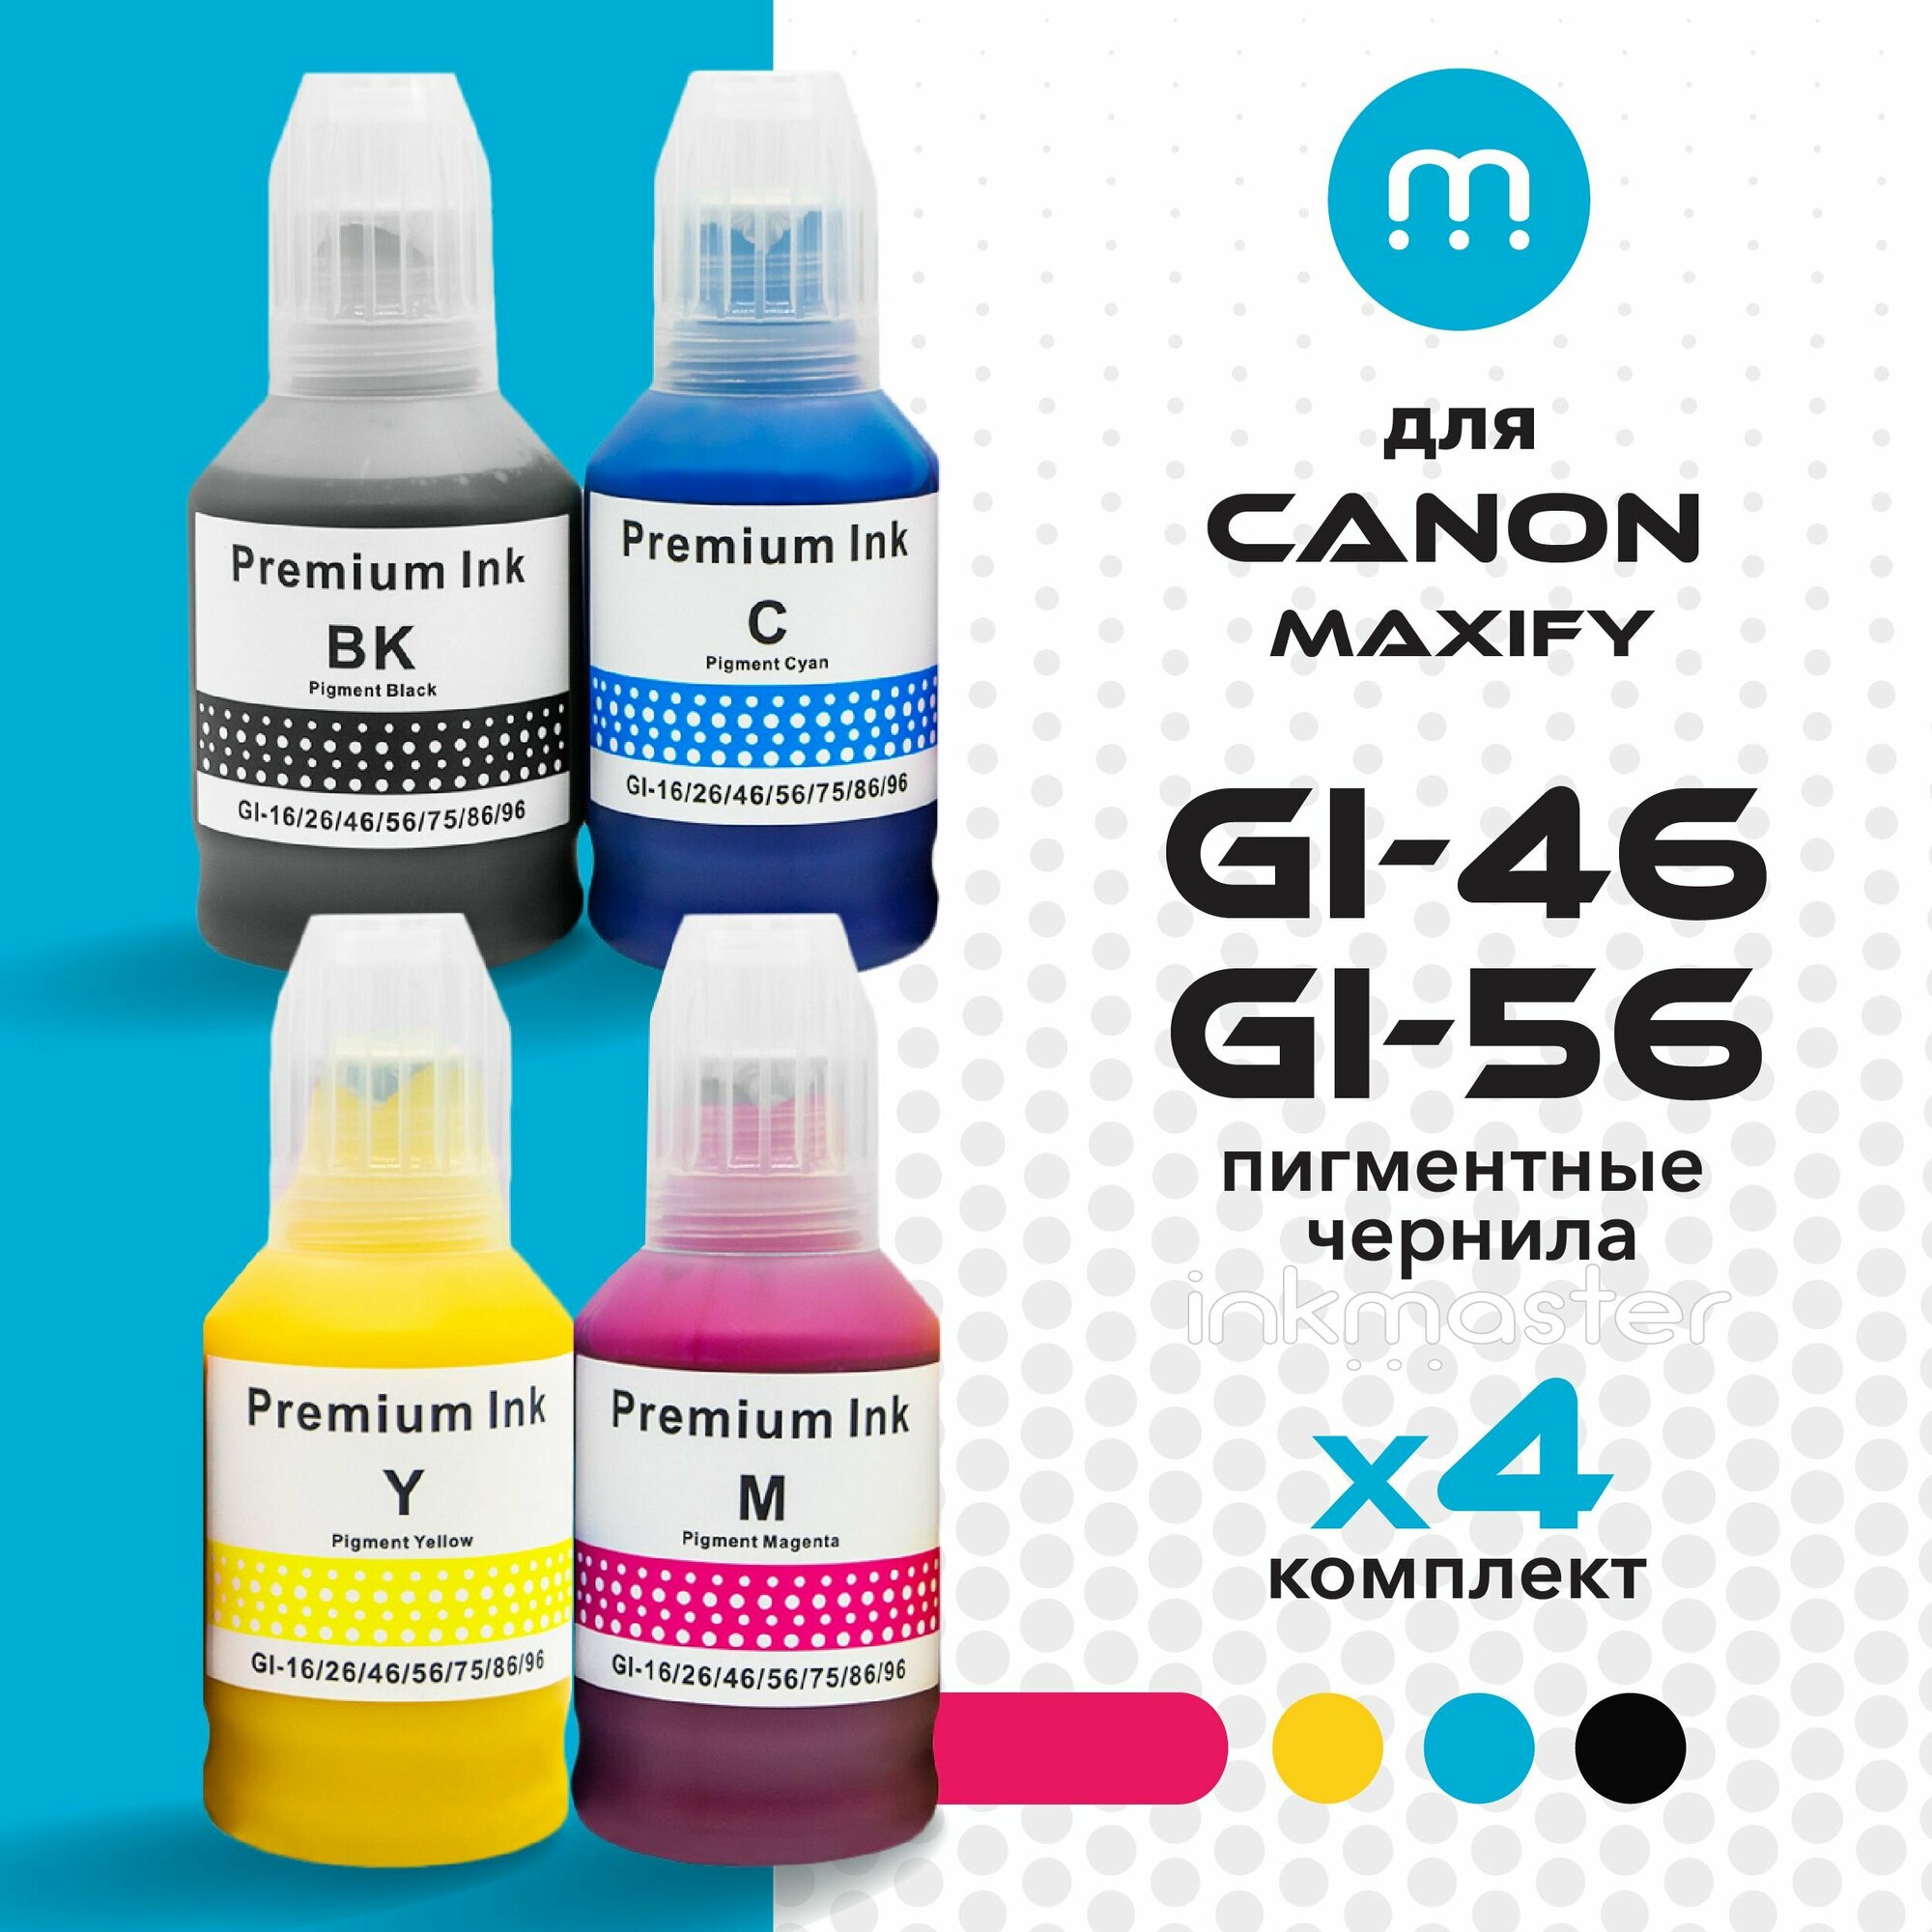 Чернила (краска) GI-46/GI-56 для Canon MAXIFY GX5040 GX6040 GX7040 (GX5000 GX6000 GX7000 Series) пигментные (набор 4 цвета) для заправки